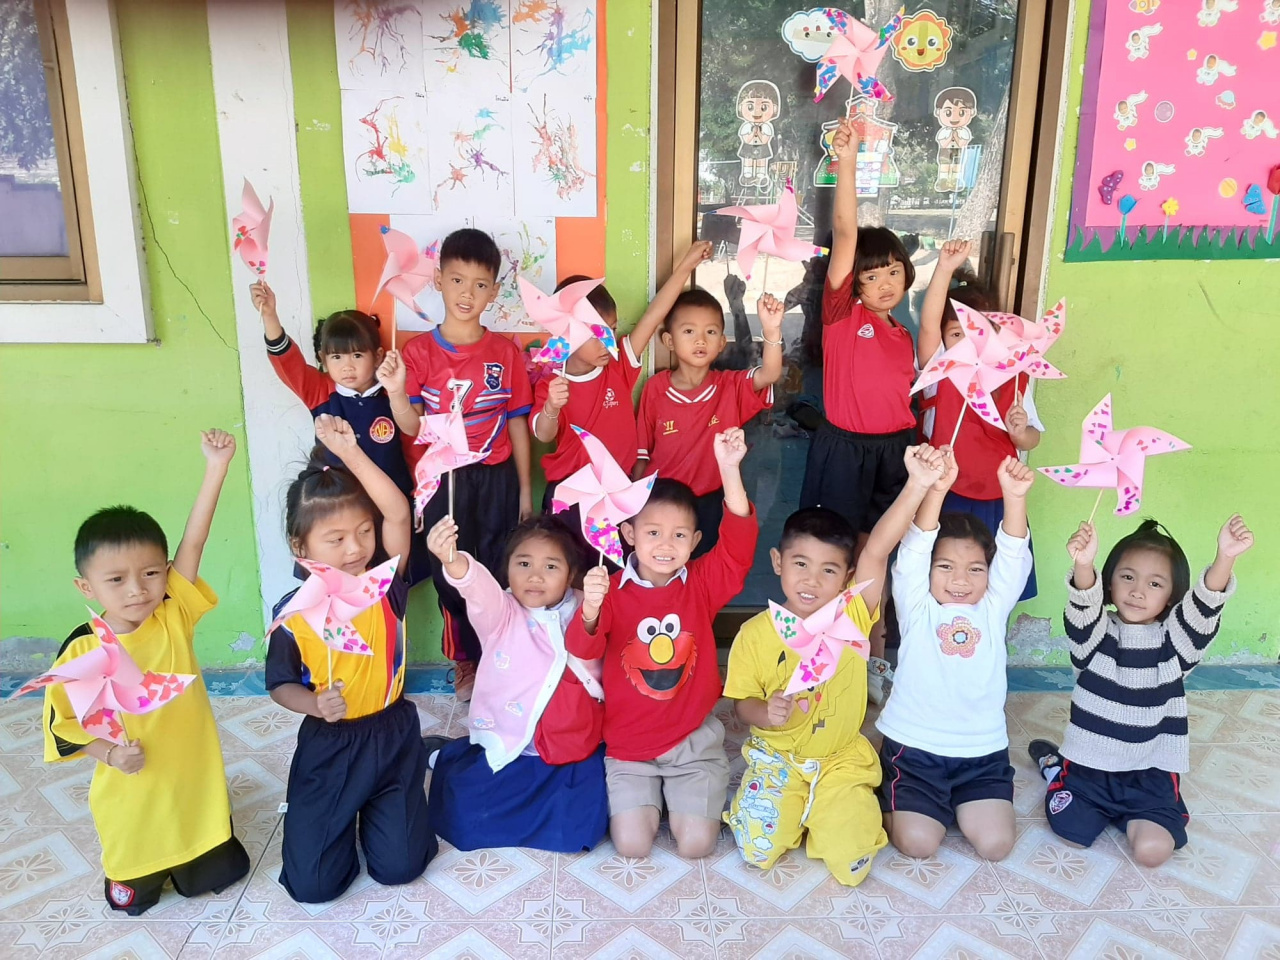 paper windmill/preschool/early chilhood education